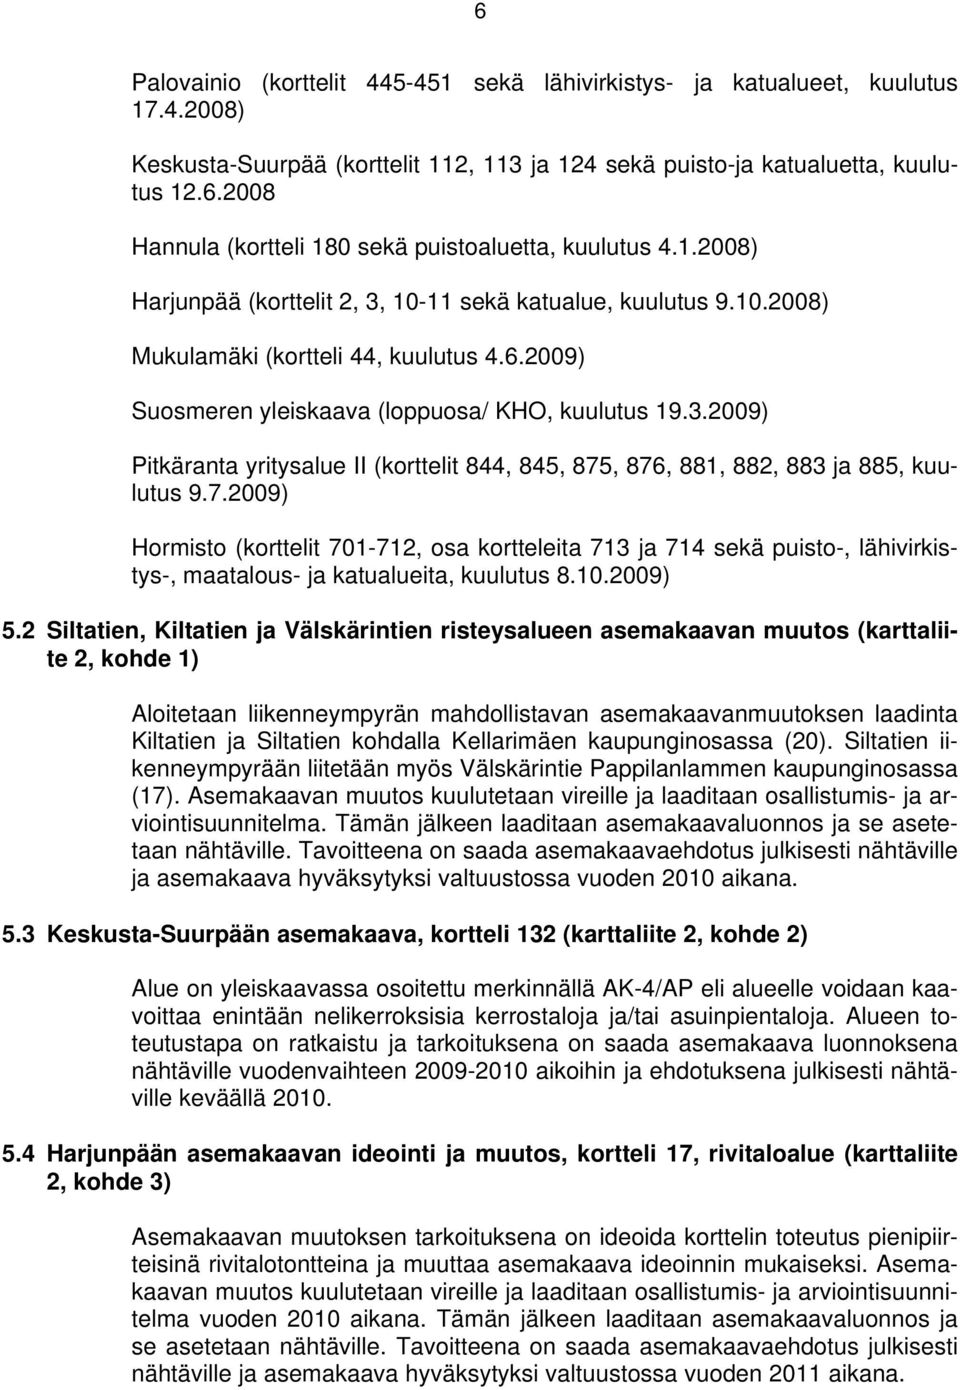 7.2009) Hormisto (korttelit 701-712, osa kortteleita 713 ja 714 sekä puisto-, lähivirkistys-, maatalous- ja katualueita, kuulutus 8.10.2009) 5.